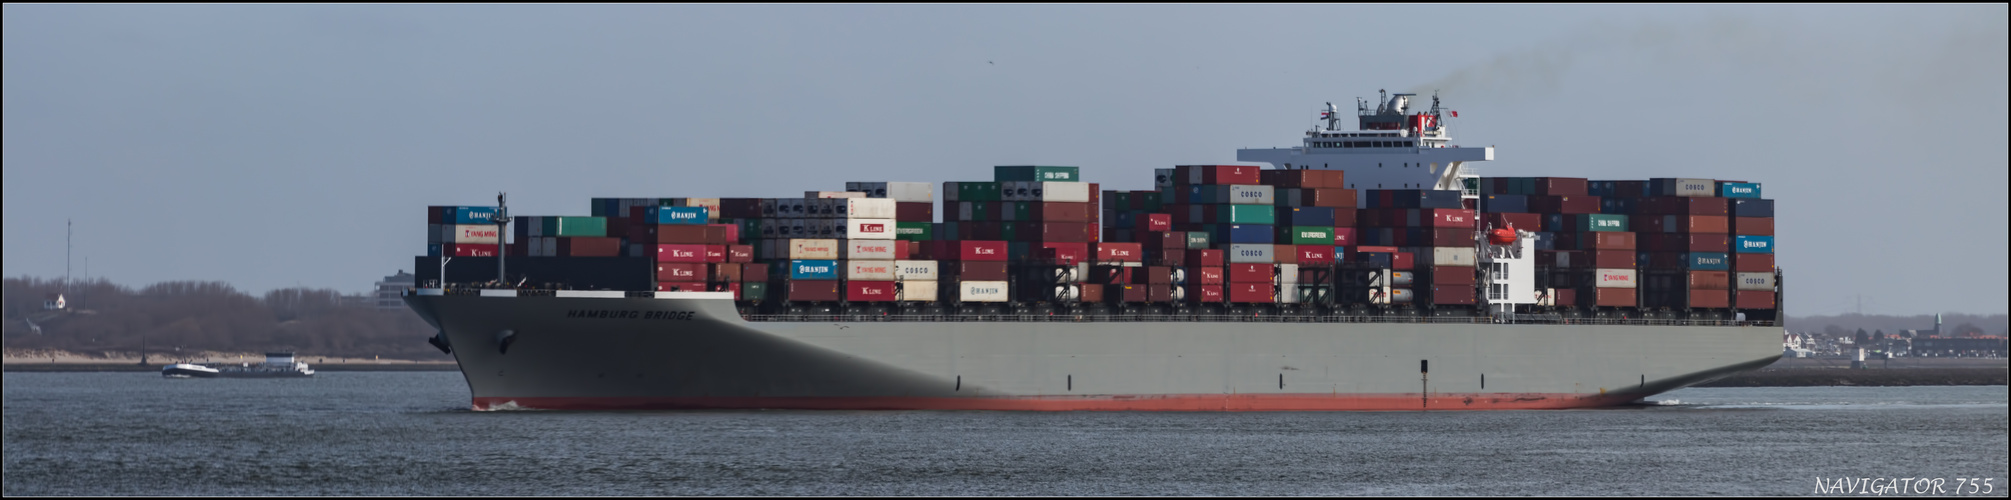 HAMBURG BRIDGE / Container Ship / Rotterdam